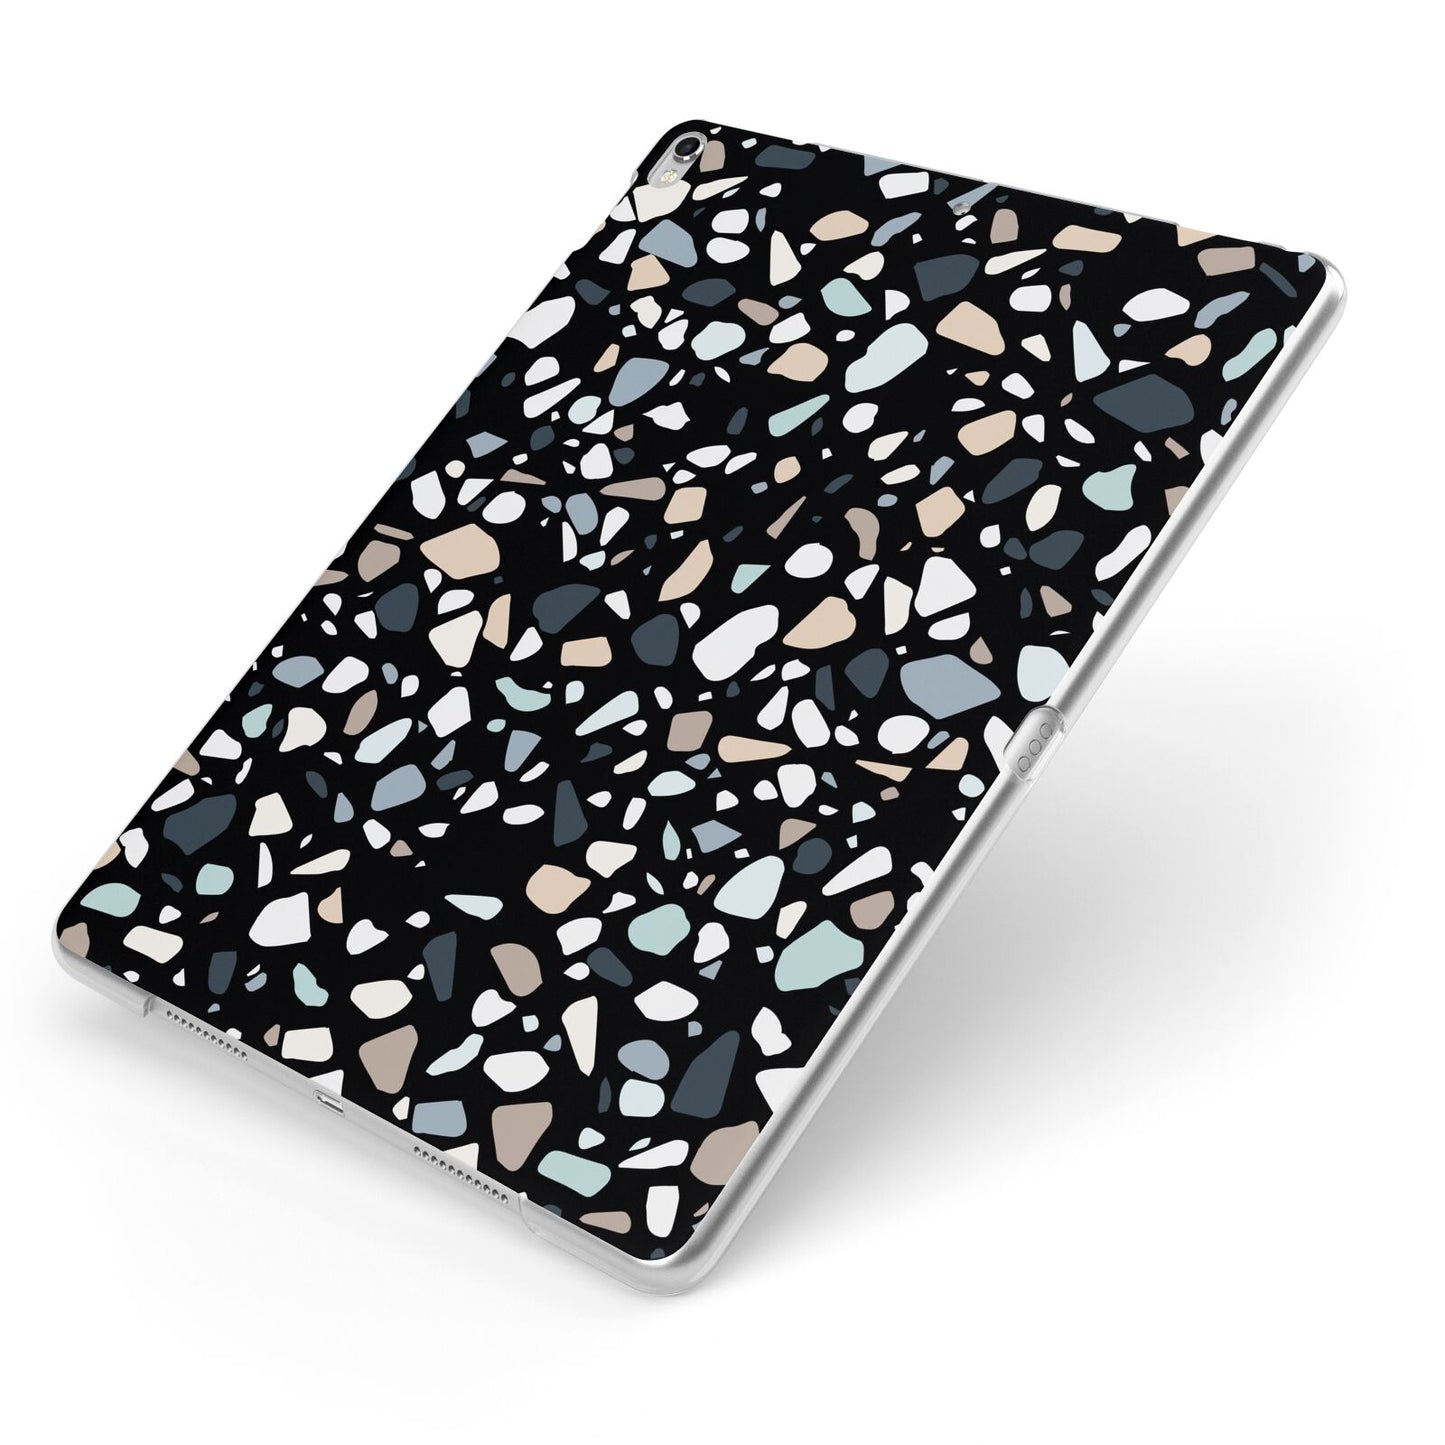 Terrazzo Apple iPad Case on Silver iPad Side View